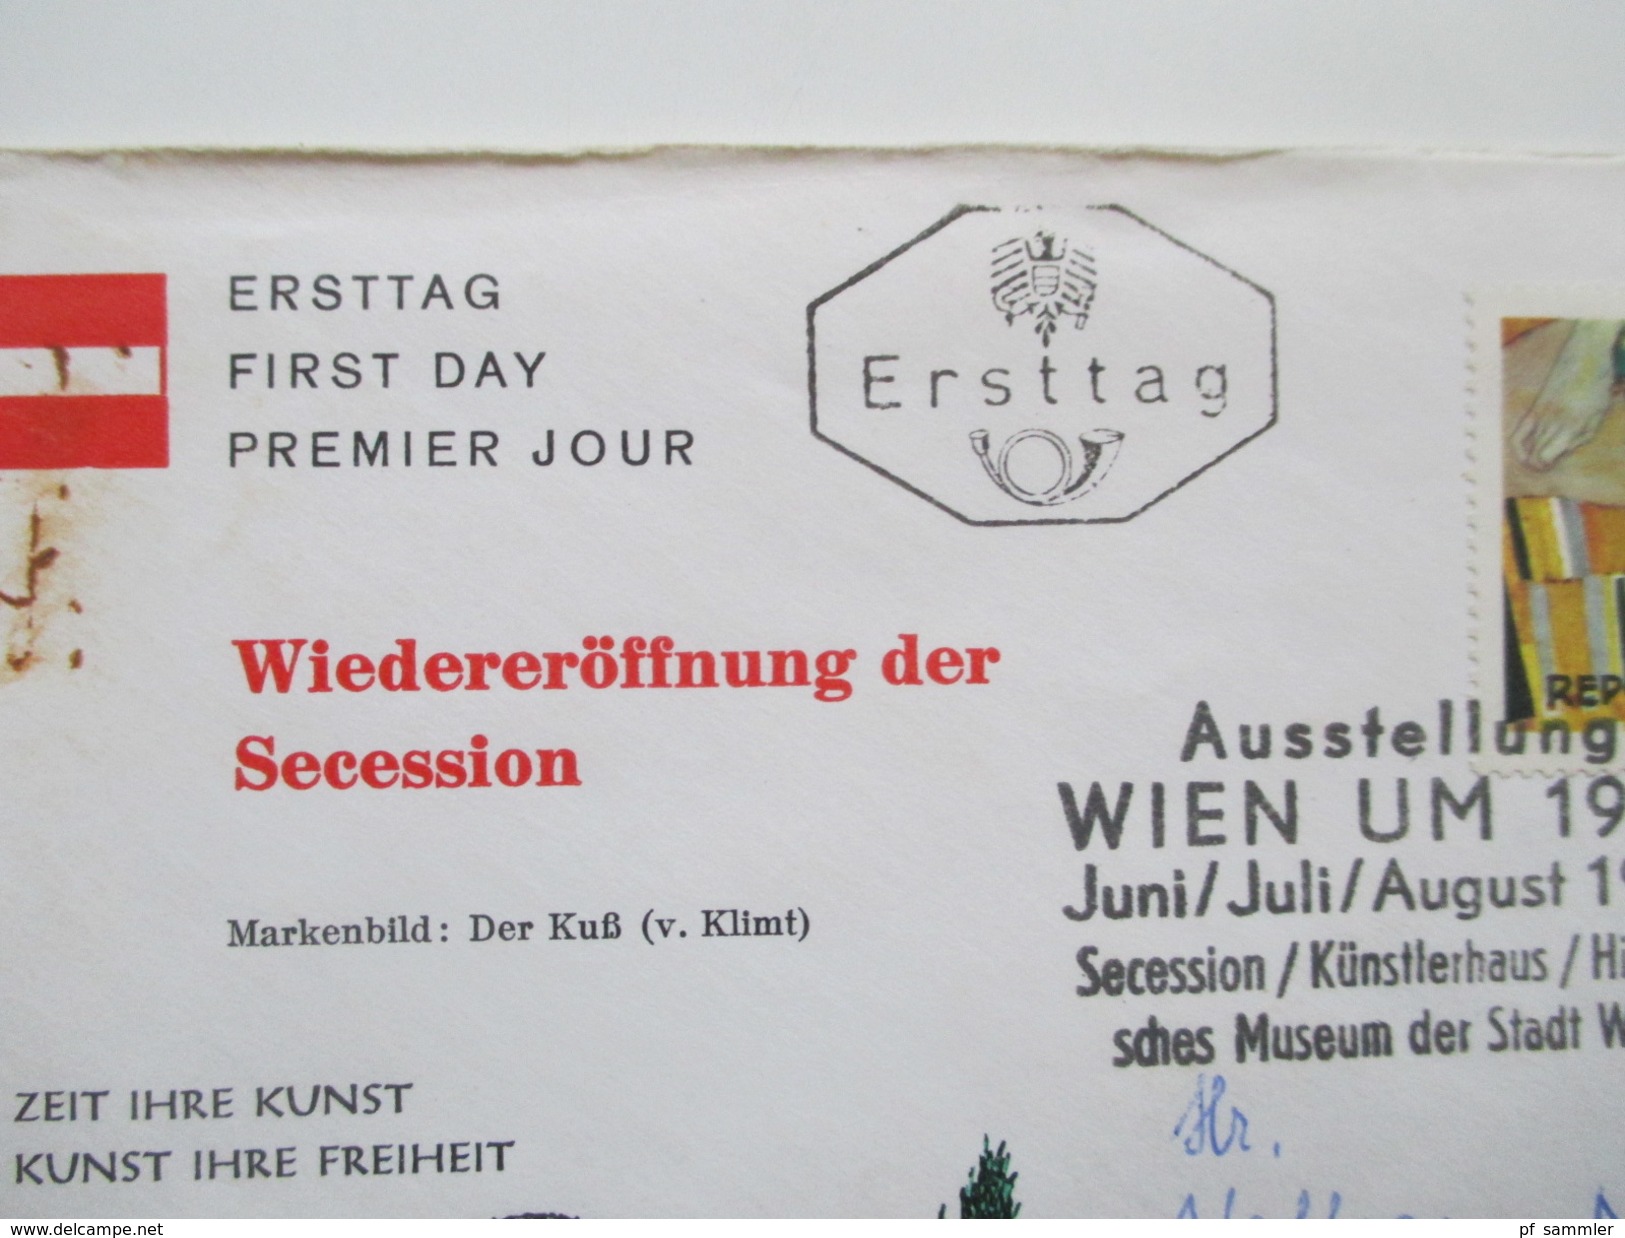 Österreich 1954 - 70er Jahre 53 FDC / R-Briefe in die DDR gelaufen! Satzbriefe / Sondertarif Tirol / Christkindl usw.